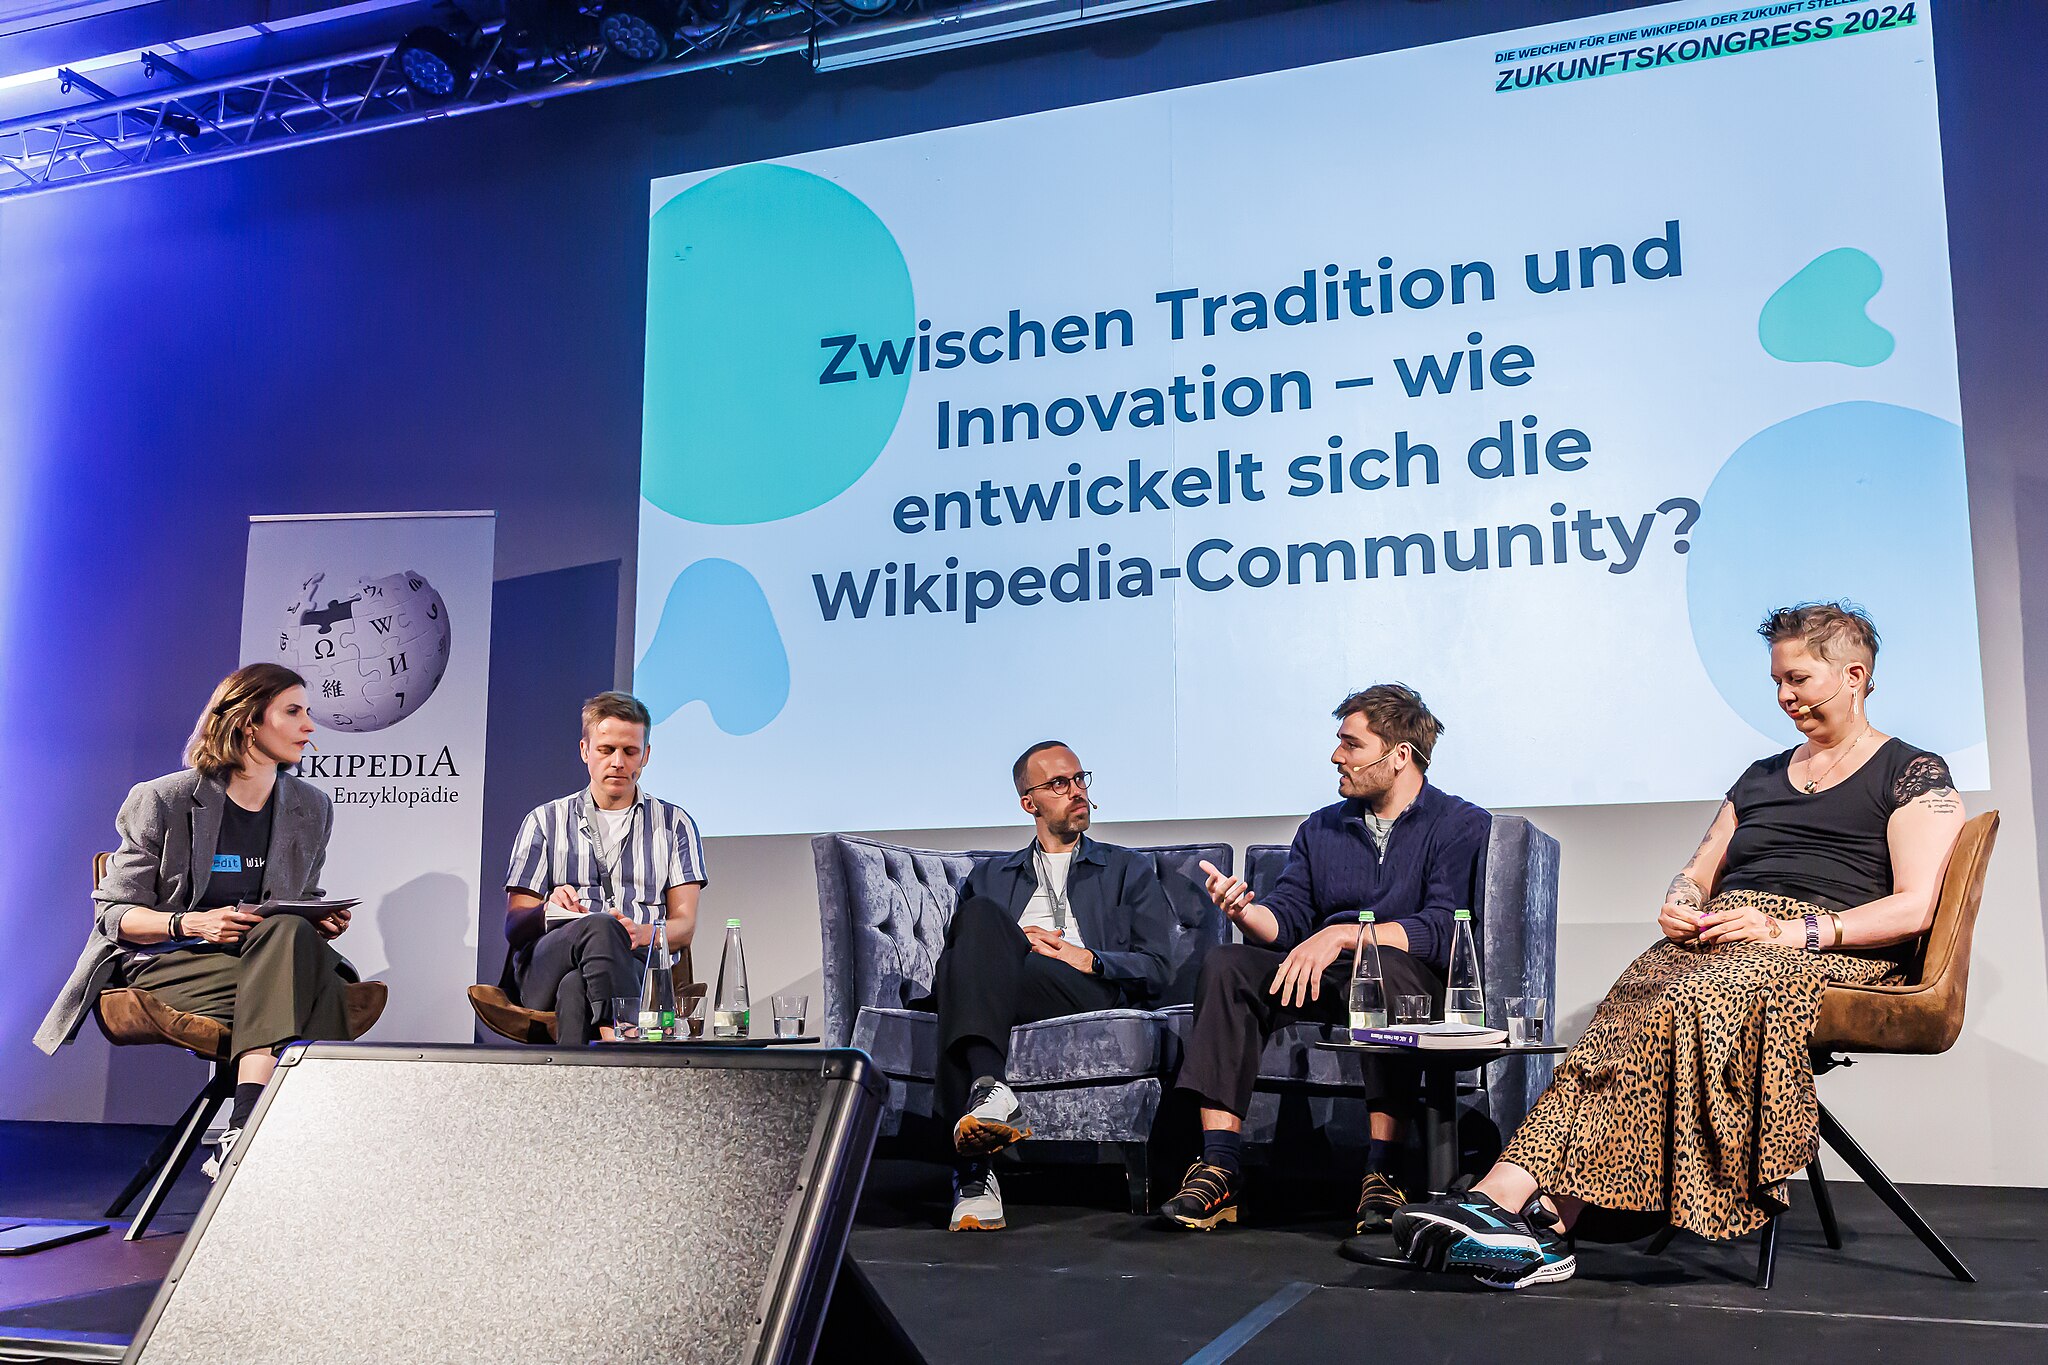 Das Podium „Zwischen Tradition und Innovation – wie entwickelt sich die Wikipedia-Community?“ mit (von links nach rechts) Sonja Fischbauer, Martin Gerlach, Daniel Sigge, Jan Krewer und DomenikaBo.